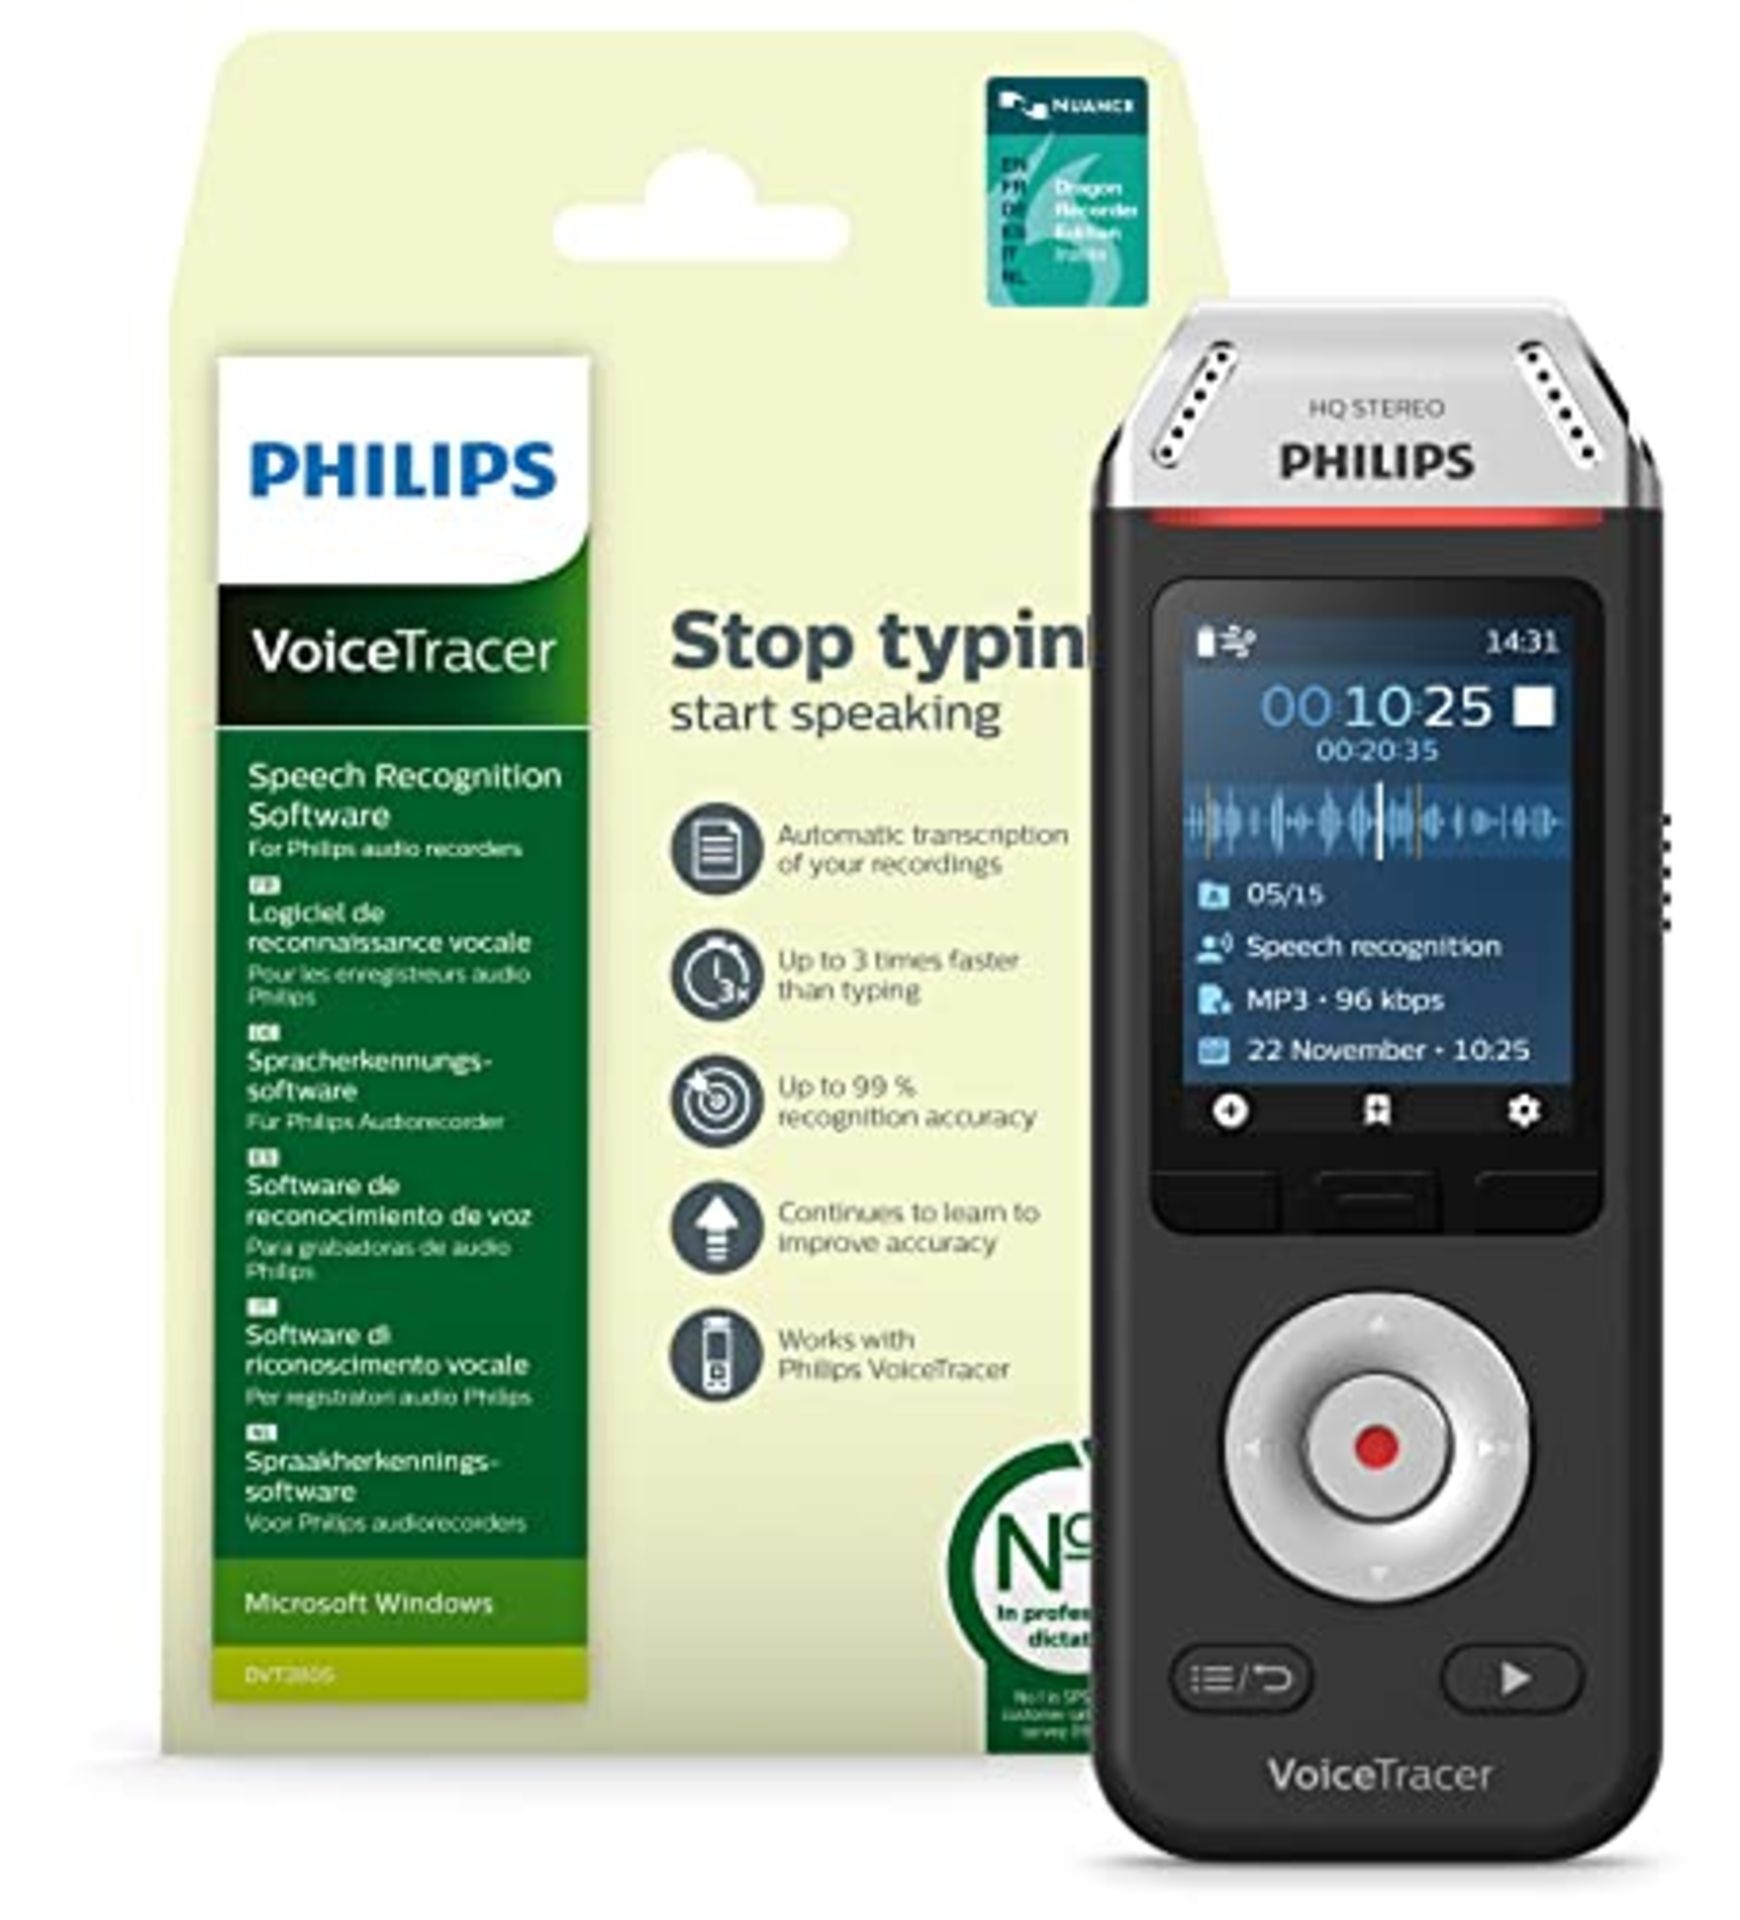 RRP £111.00 Philips Grabadora de Audio VoiceTracer con Software de reconocimiento de Voz Dragon Sp